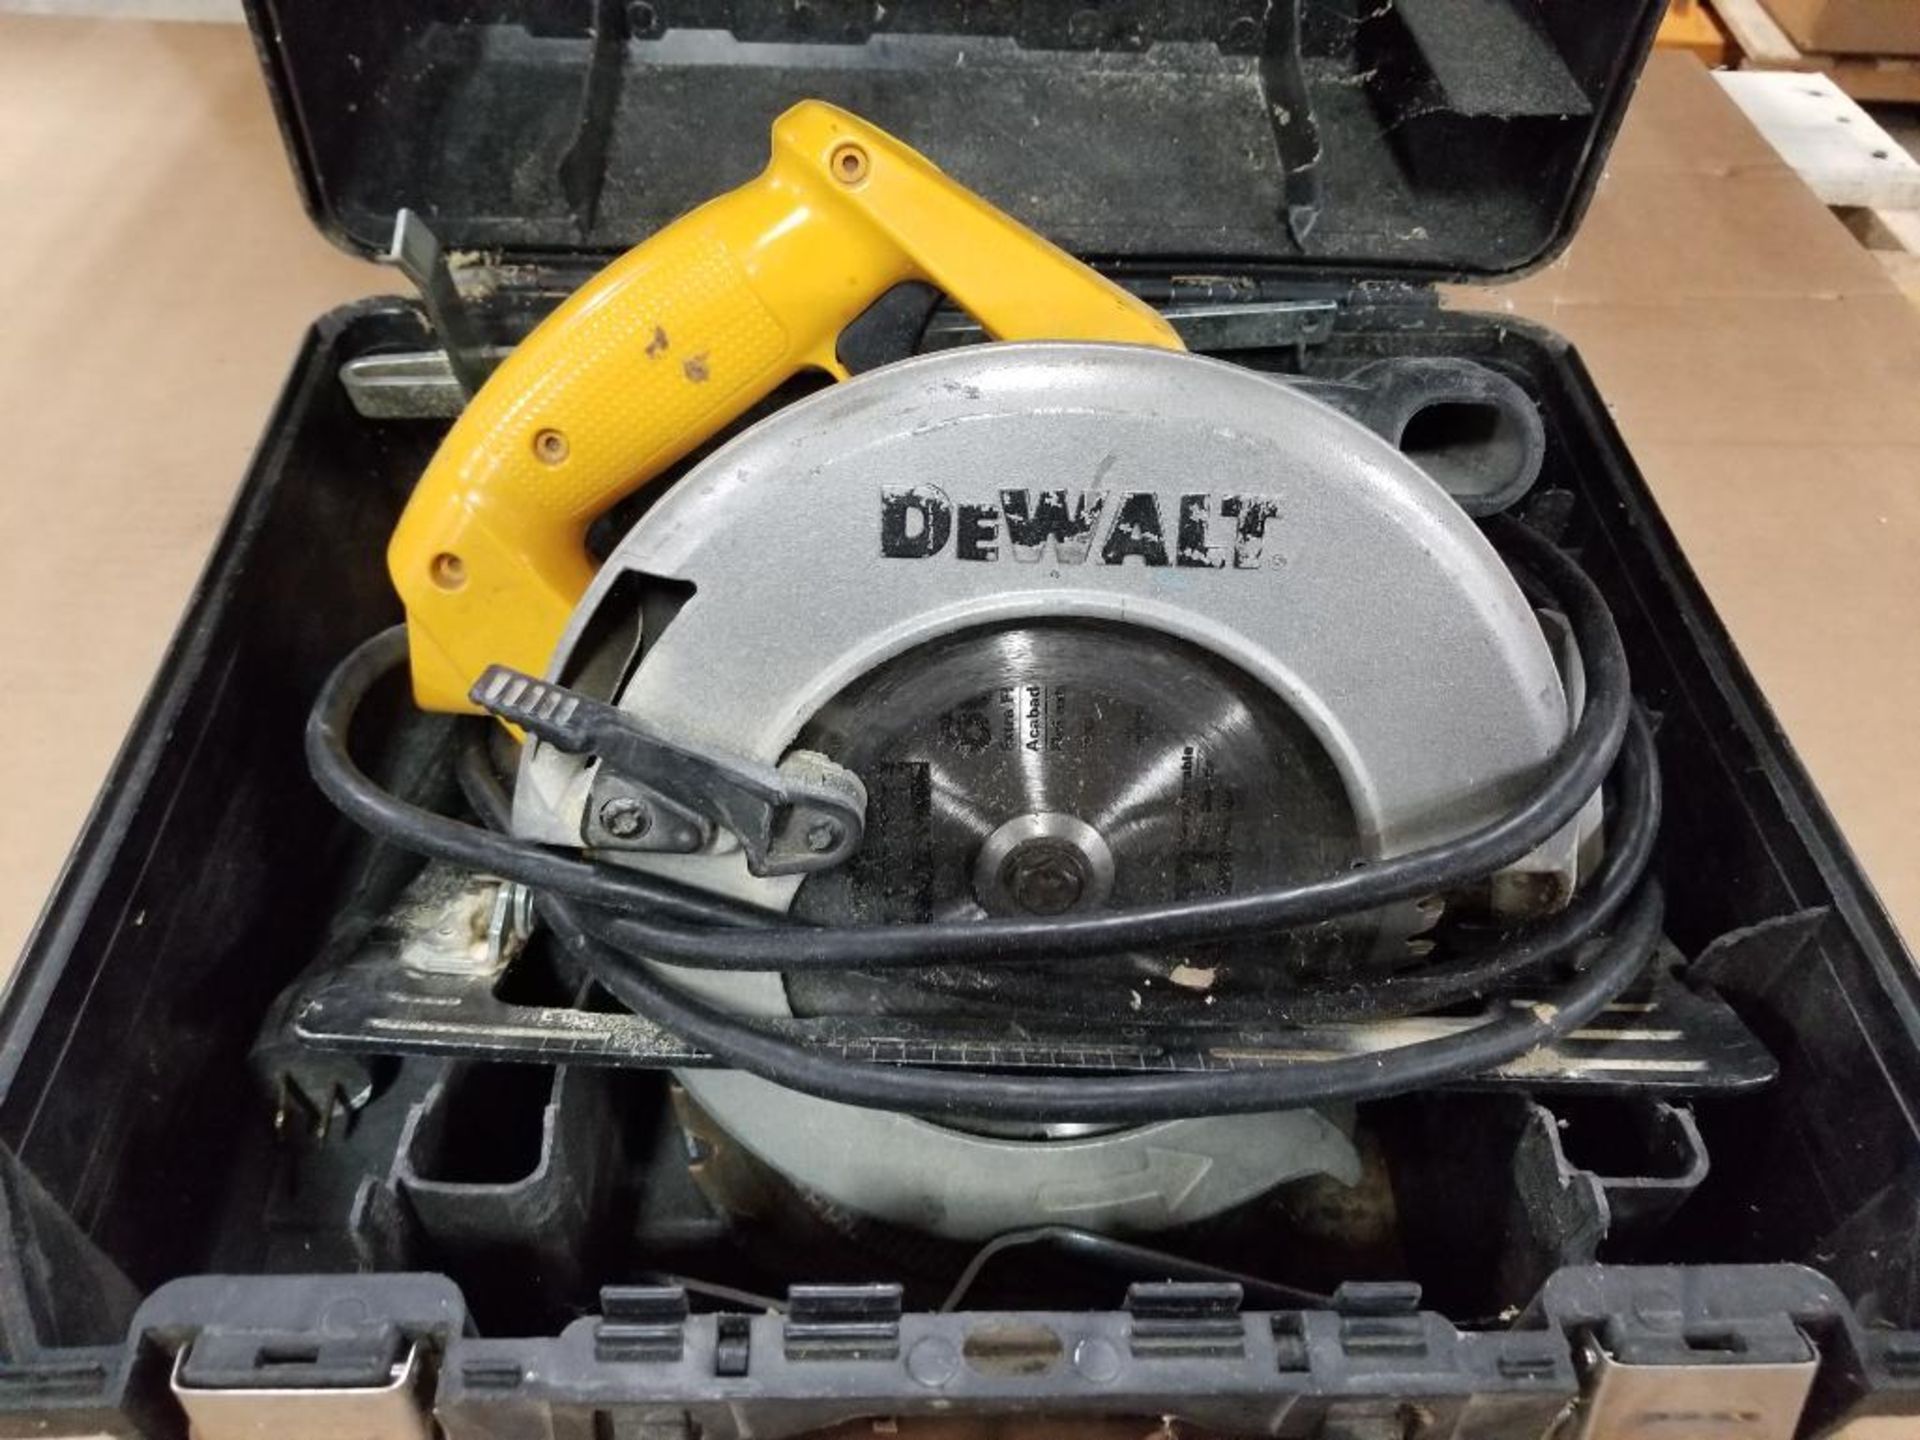 DeWalt DW359 7-1/4" circular saw. 15AMP.